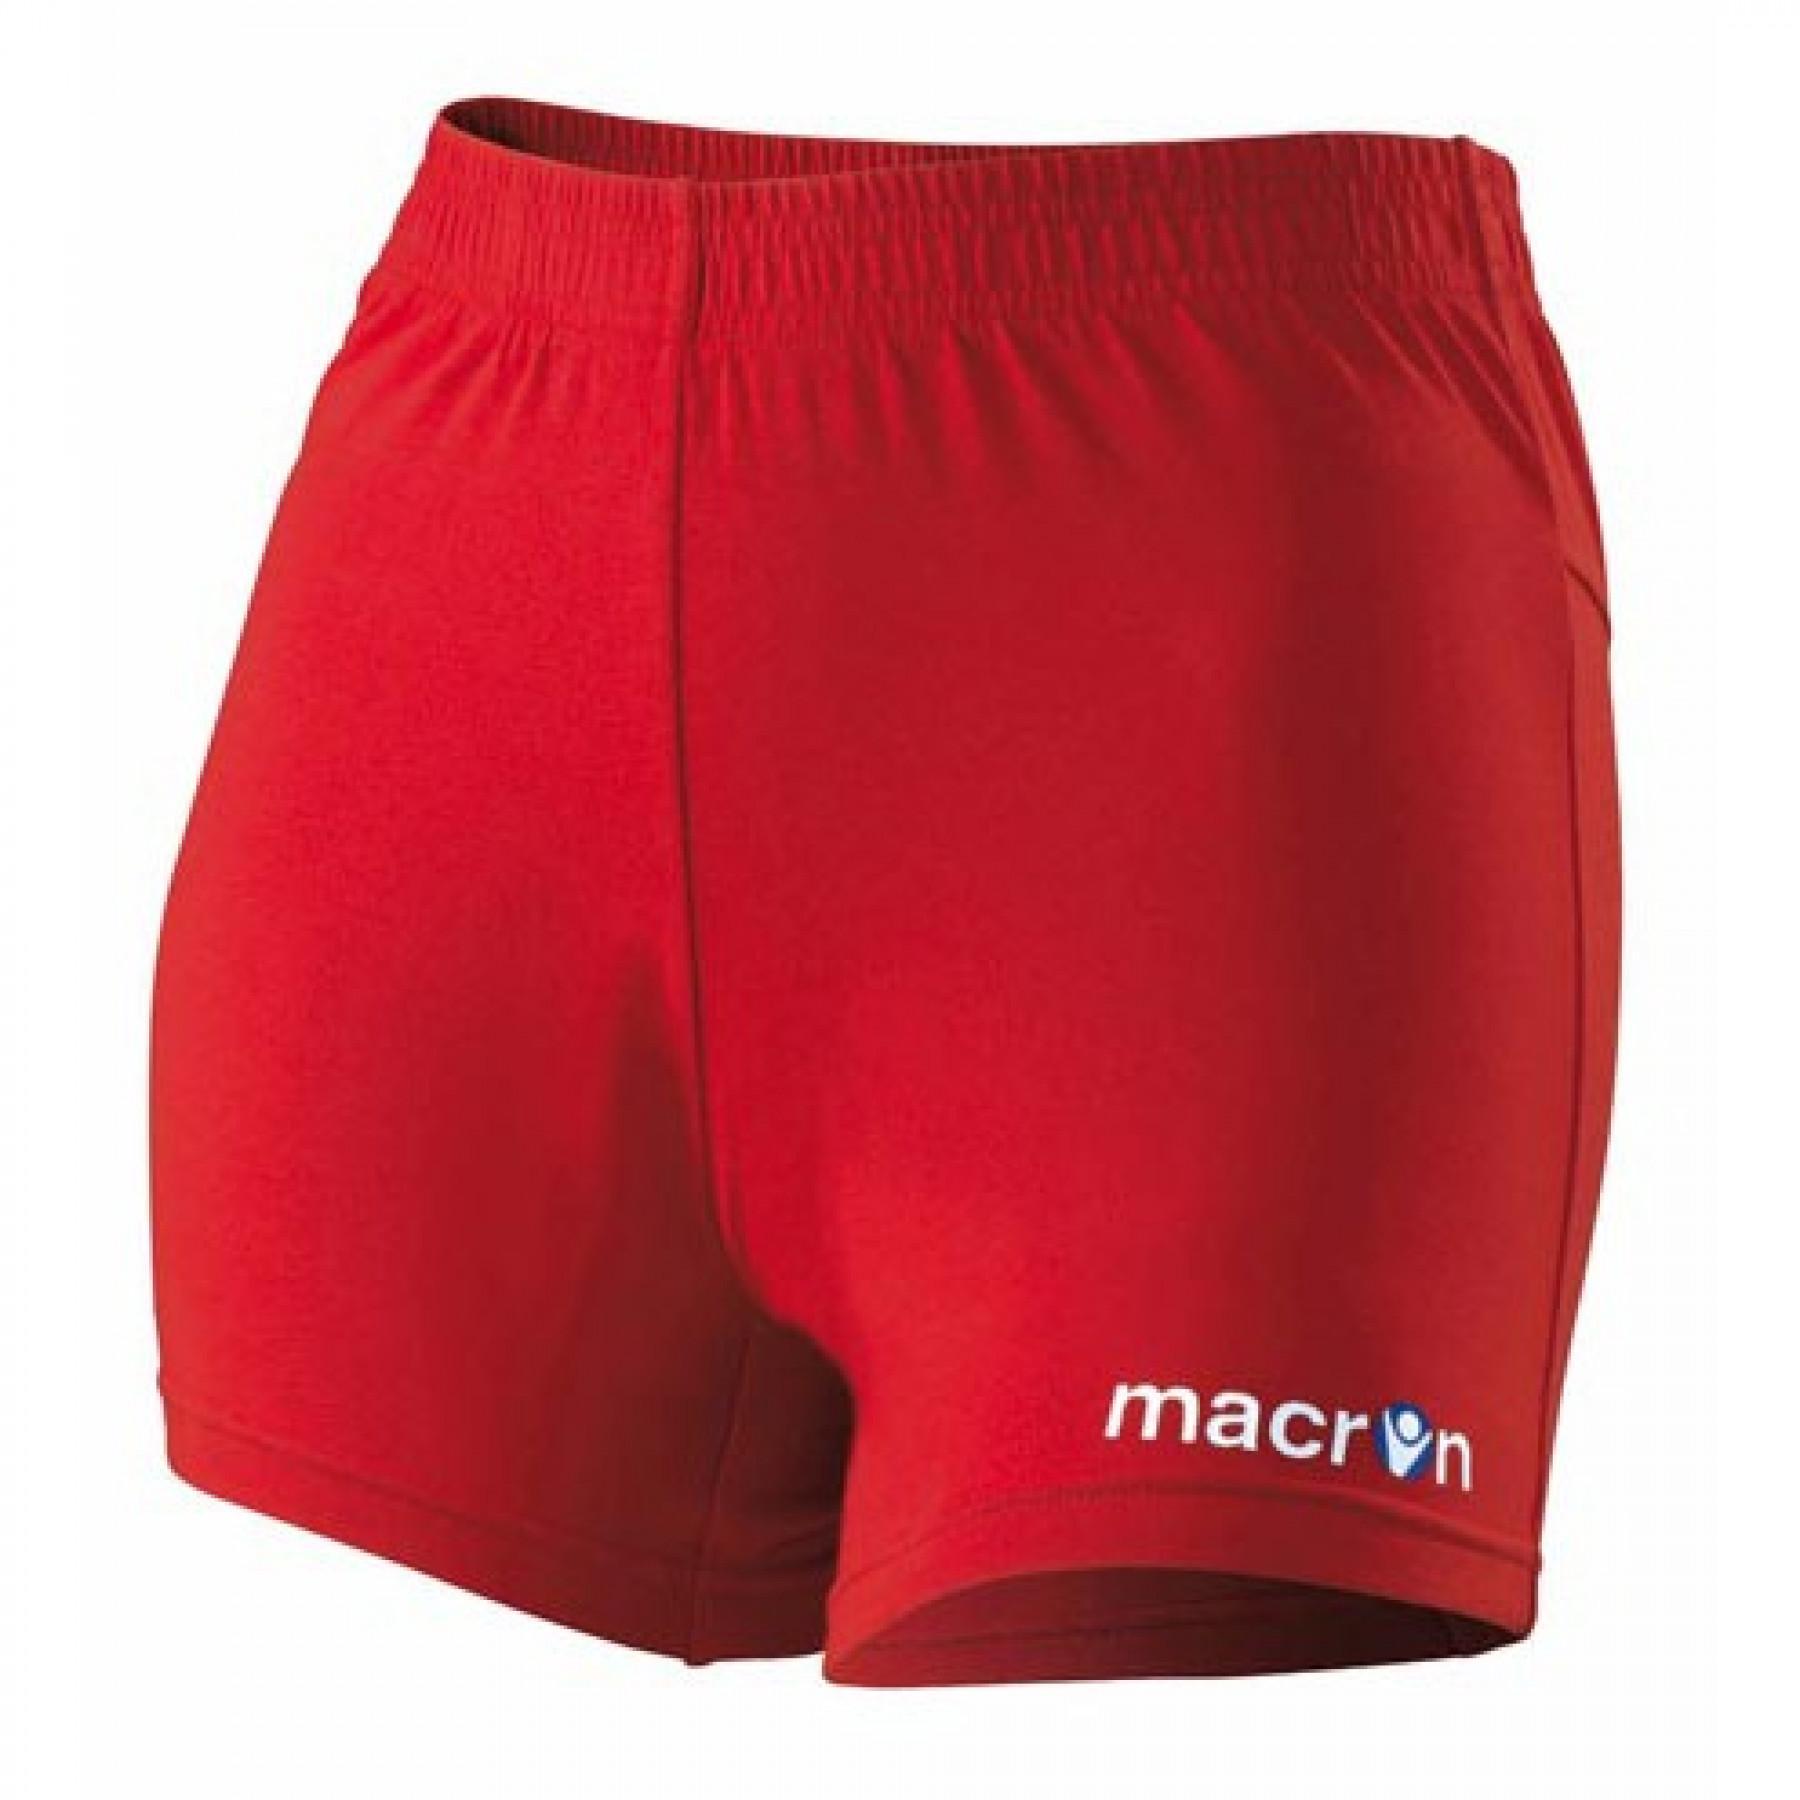 Pantaloncini Macron marina